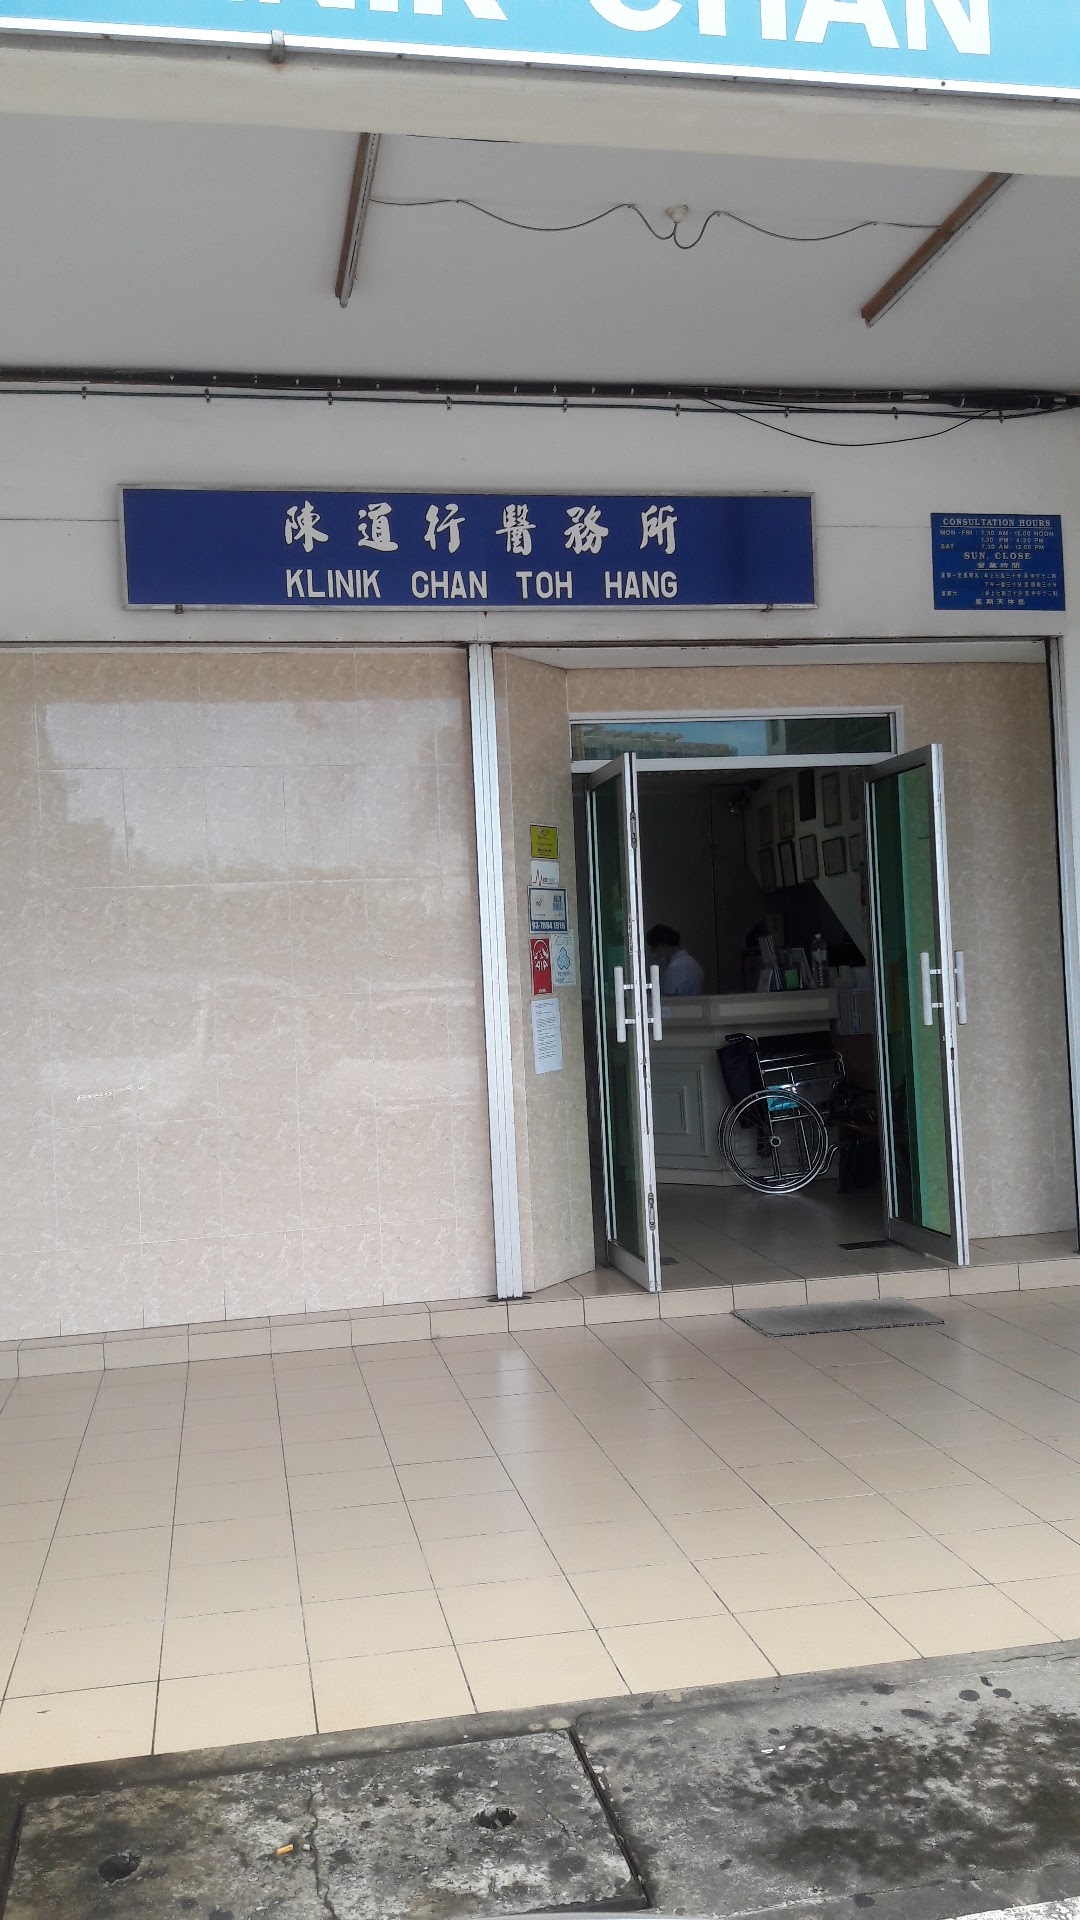 Klinik Chan Toh Hang